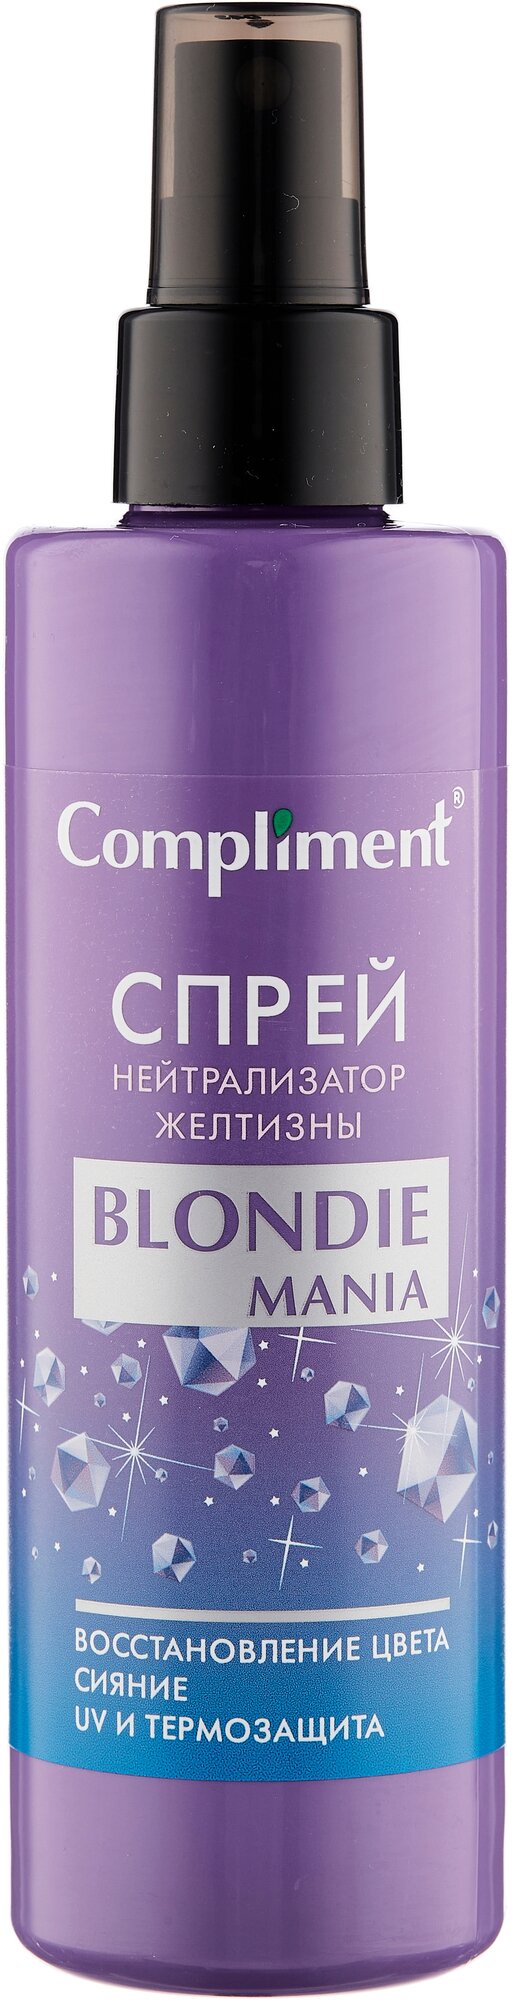 Compliment Blondie Mania Спрей для волос Нейтрализатор желтизны